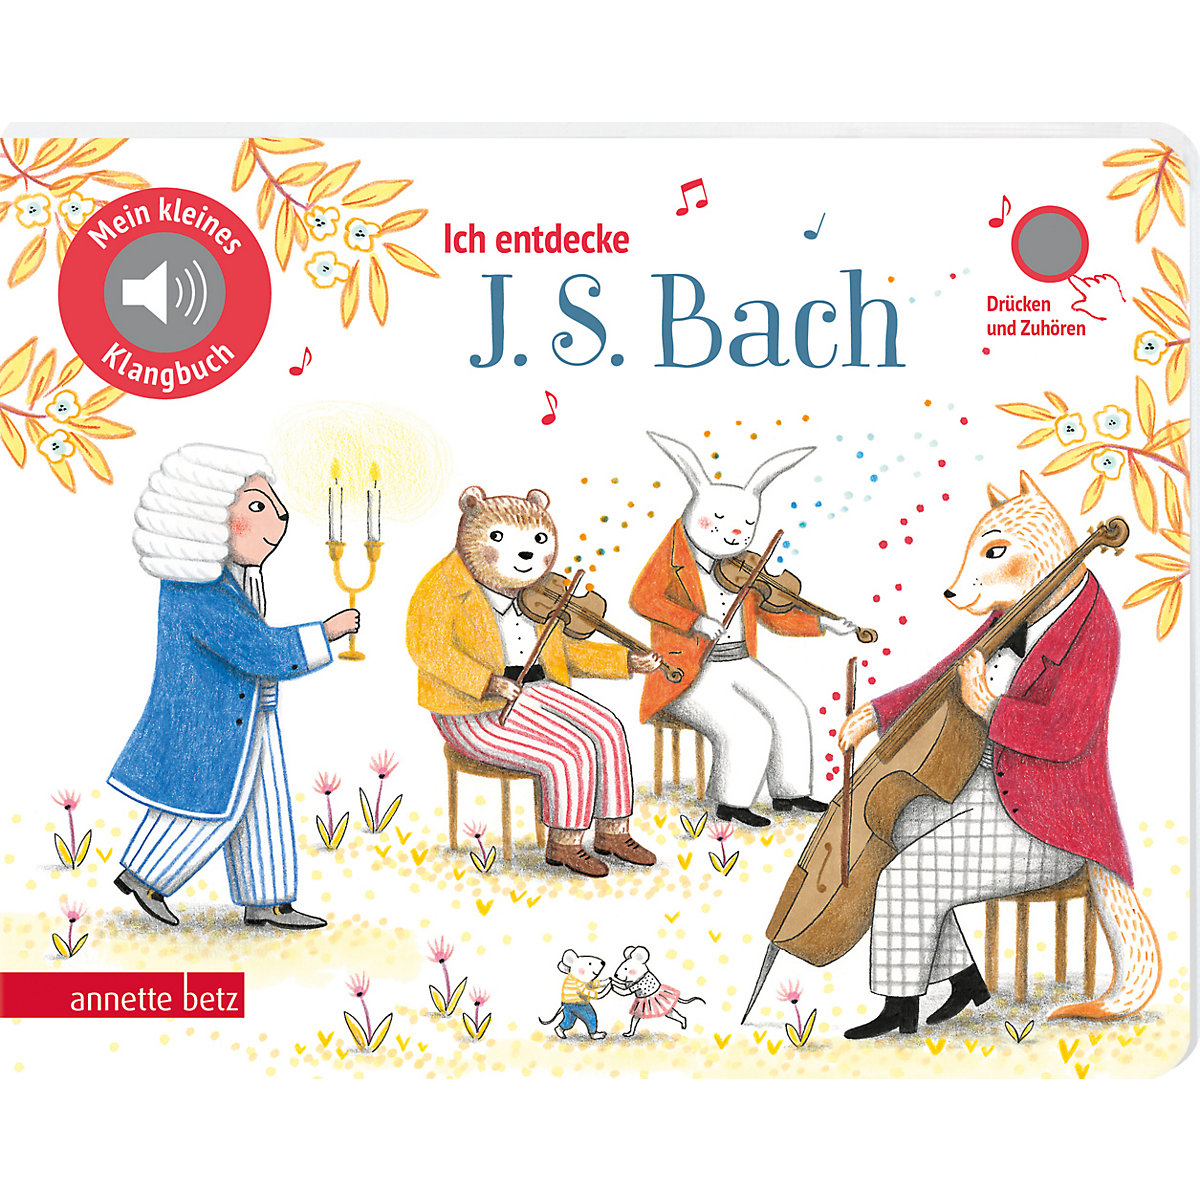 Ich entdecke J. S. Bach (Mein kleines Klangbuch Bd. ?)